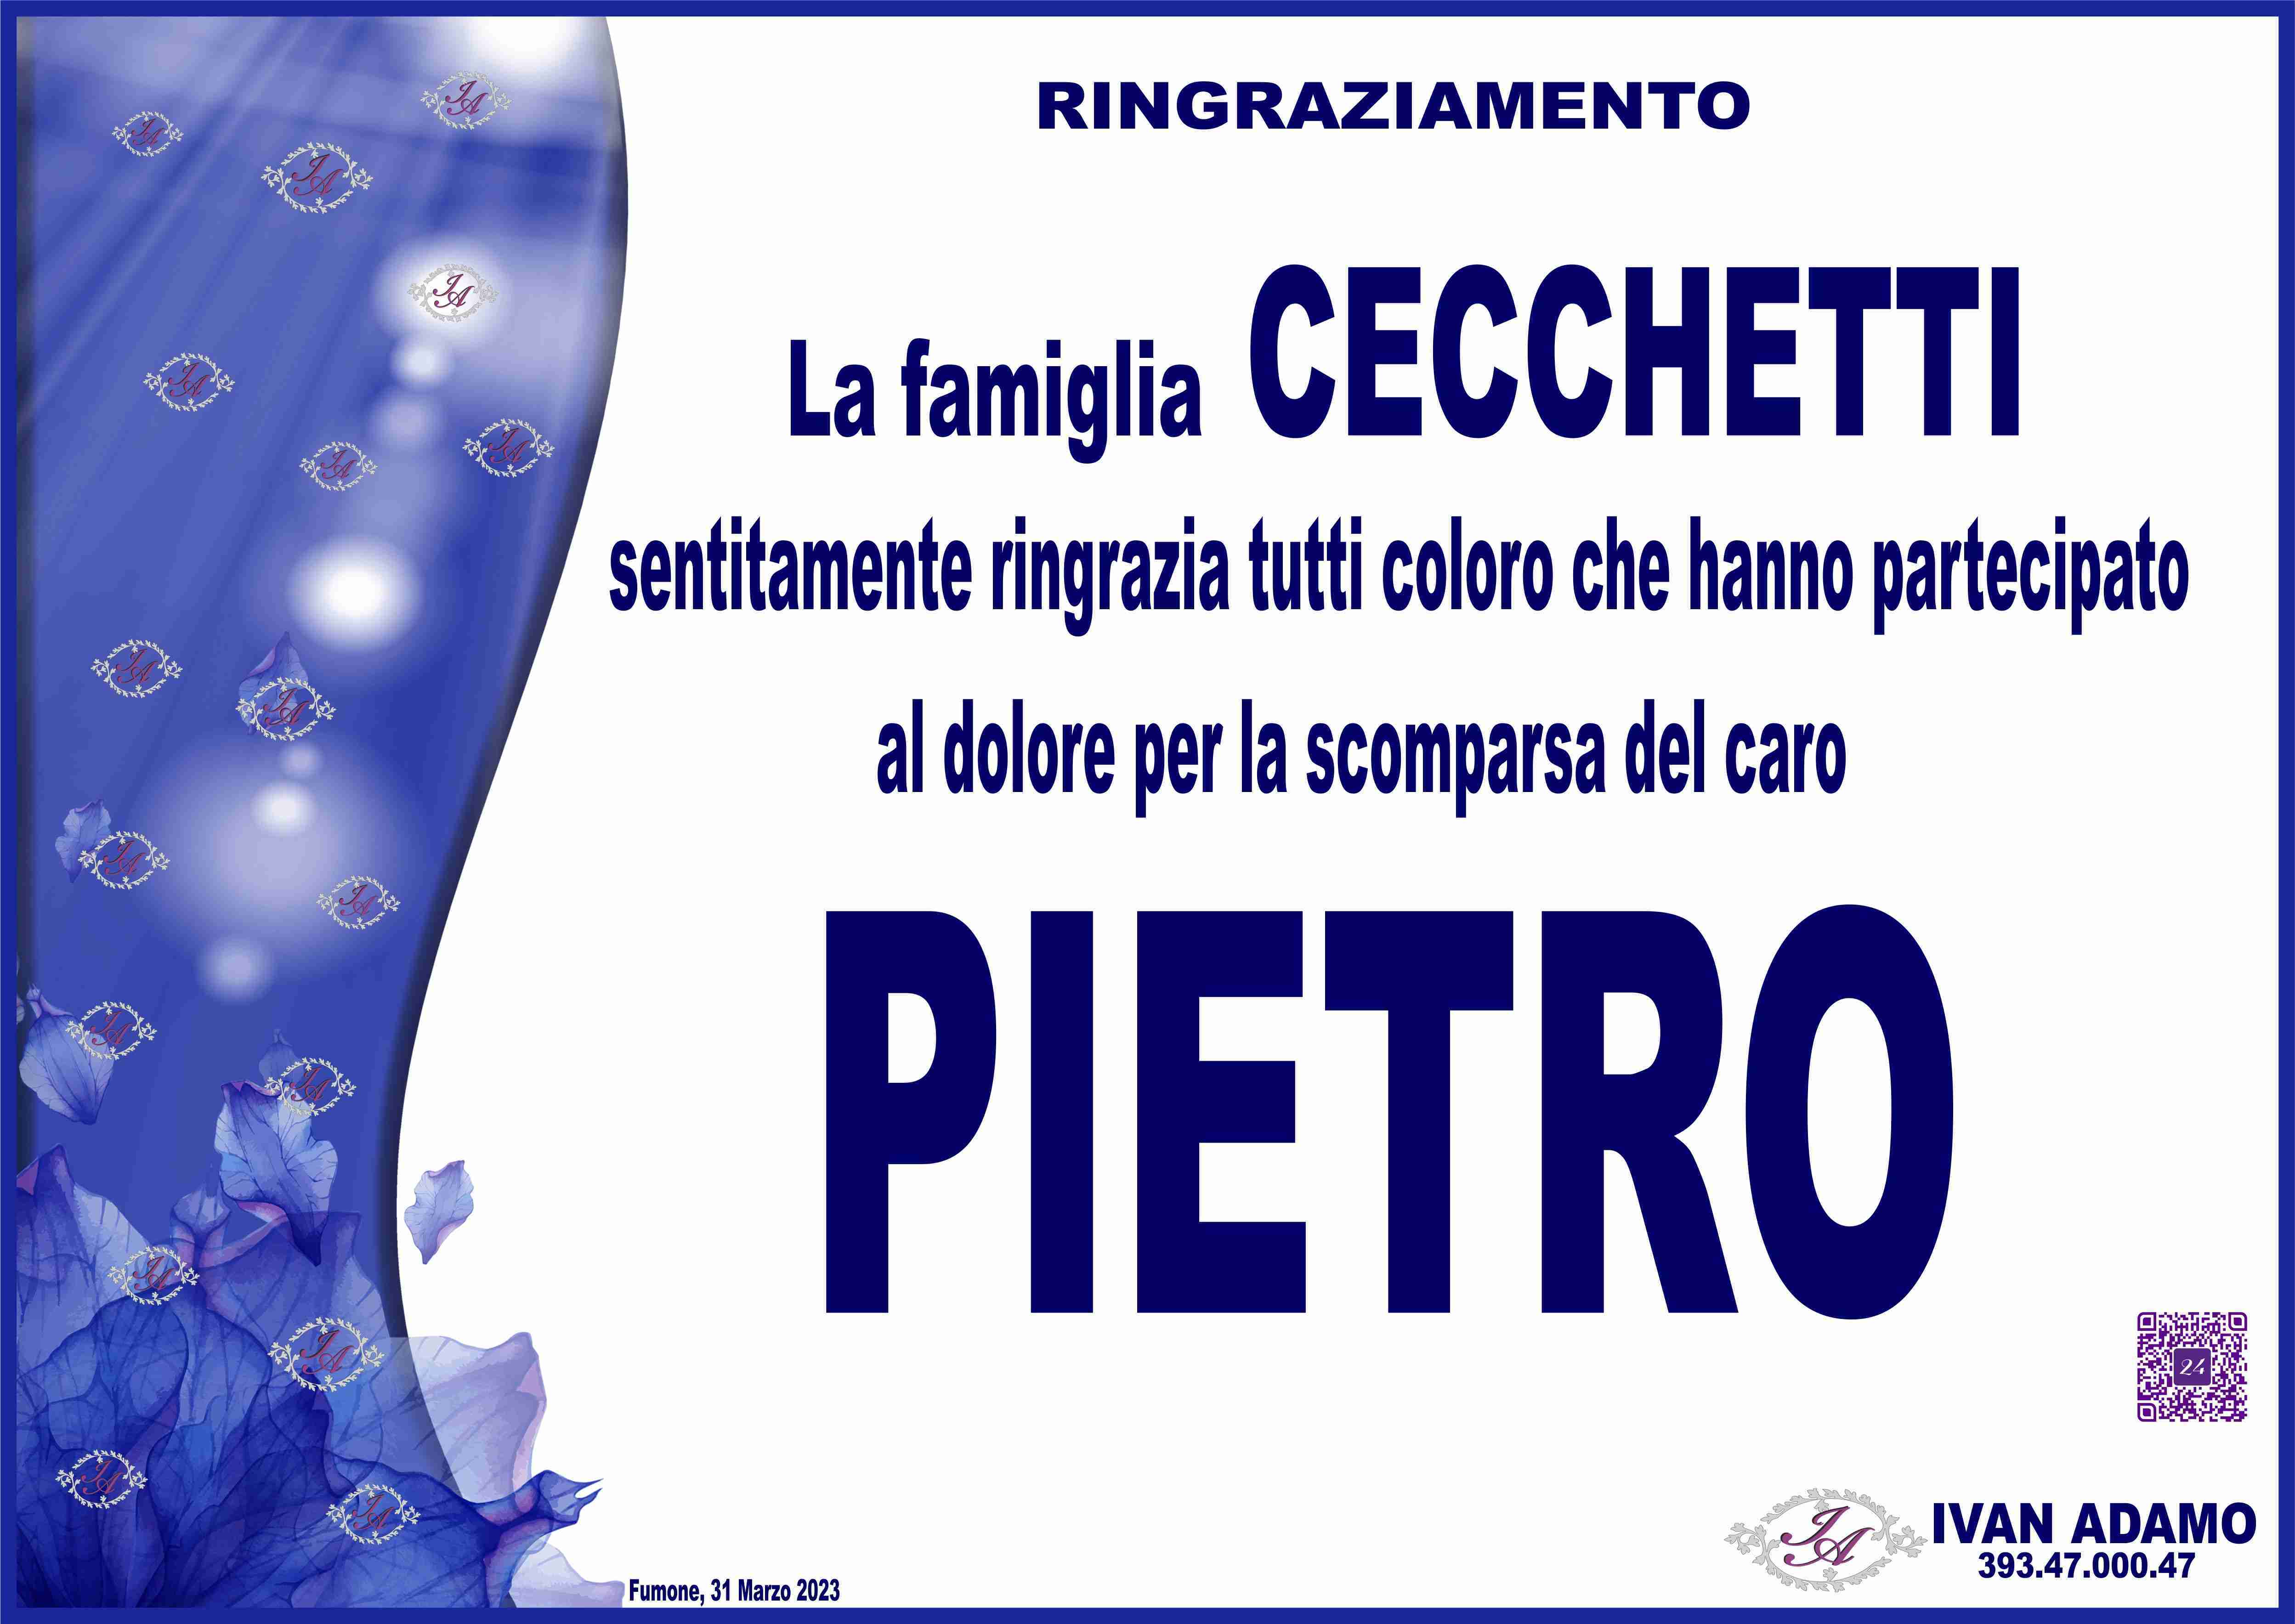 Pietro Cecchetti